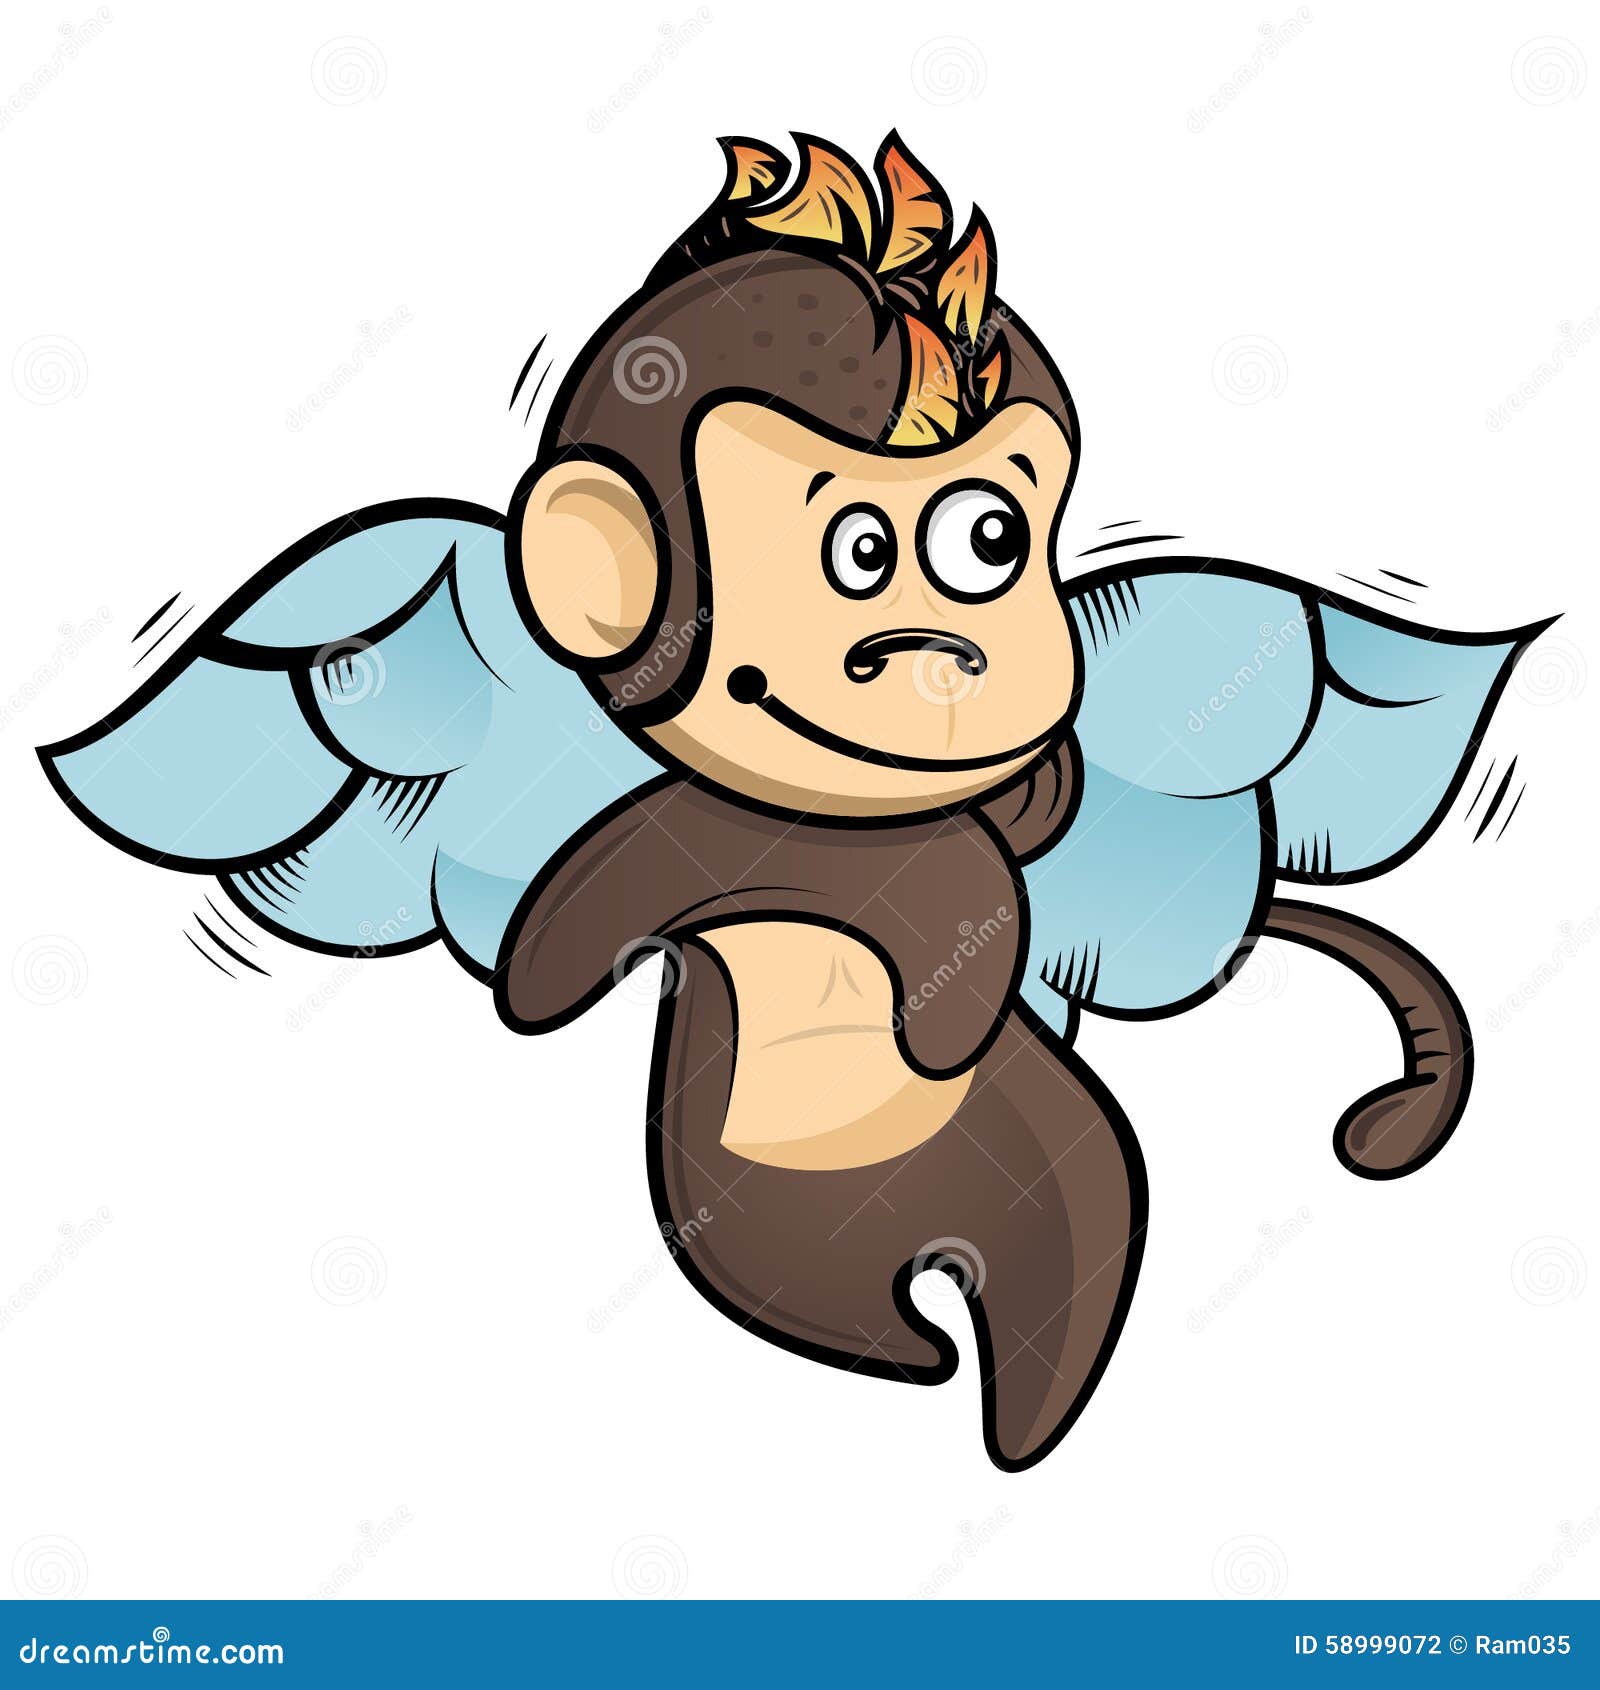 X 上的 Desenhos de Macaco：「Vou voltar fazendo macacos bem mais